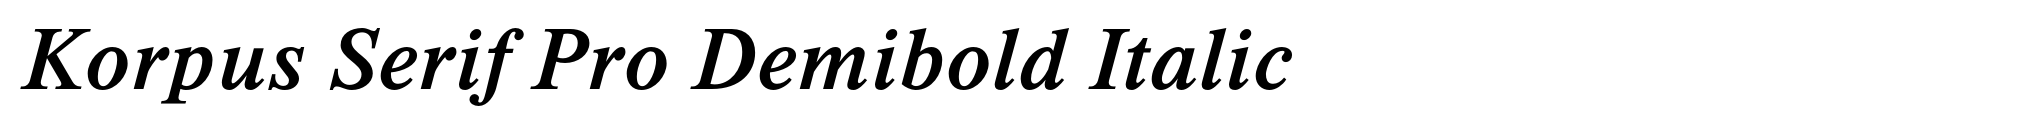 Korpus Serif Pro Demibold Italic image